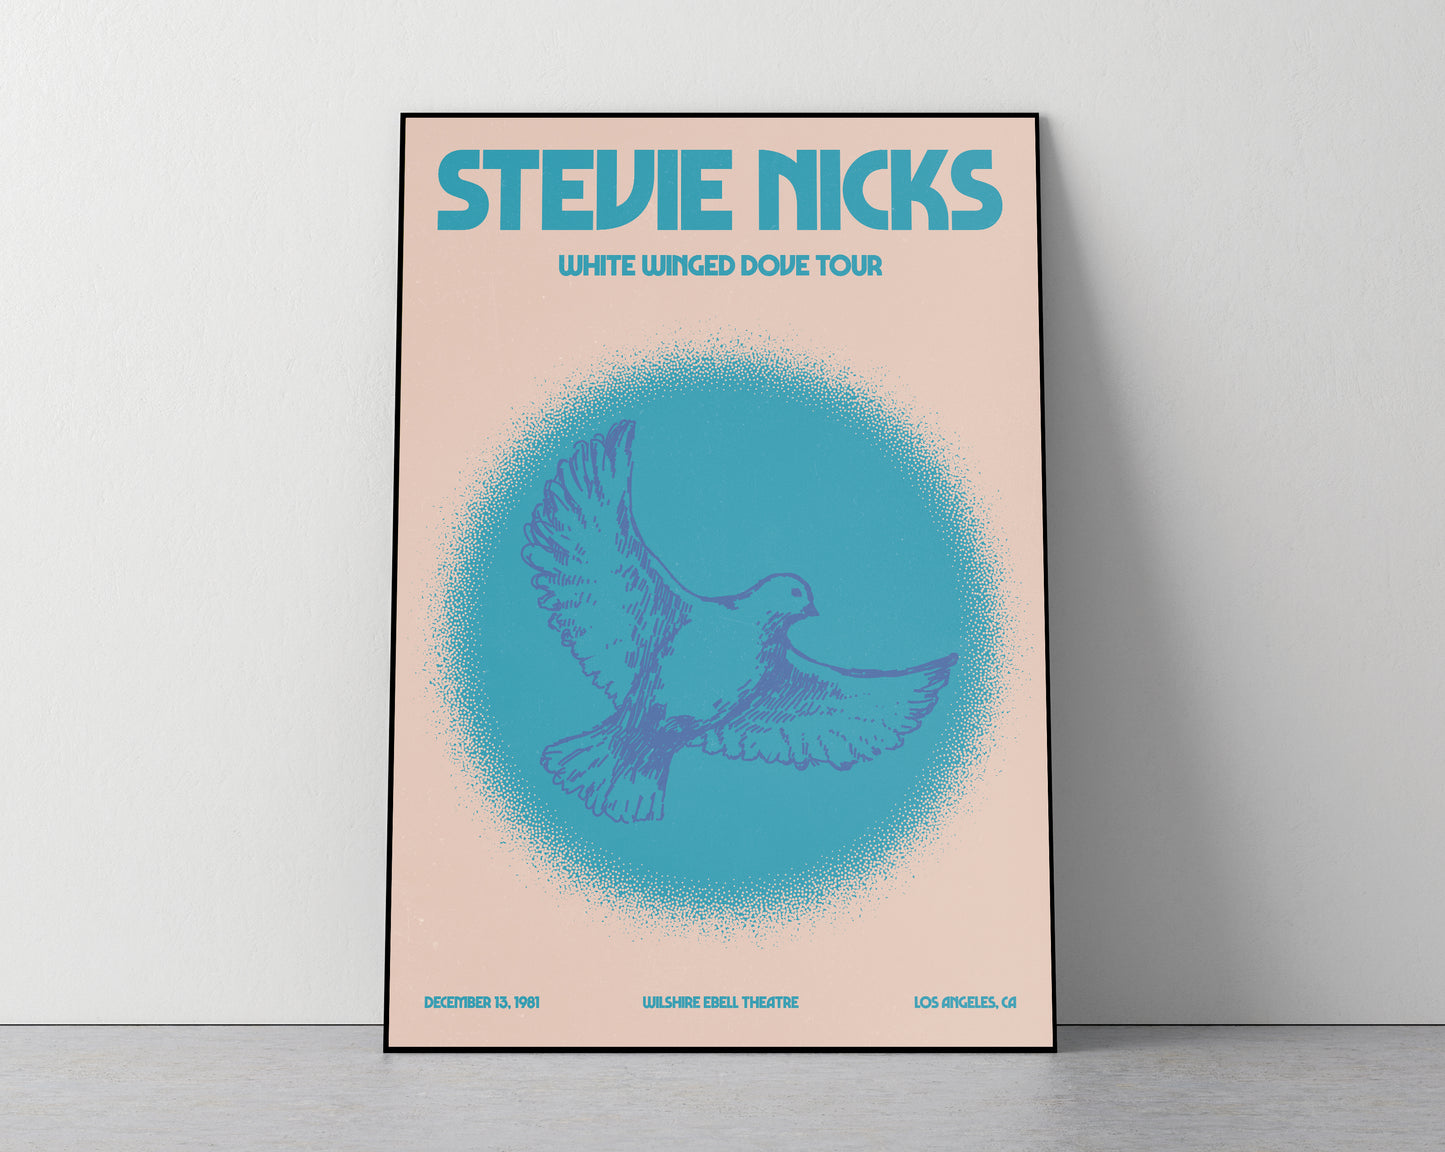 Stevie Nicks - Art Print / Poster